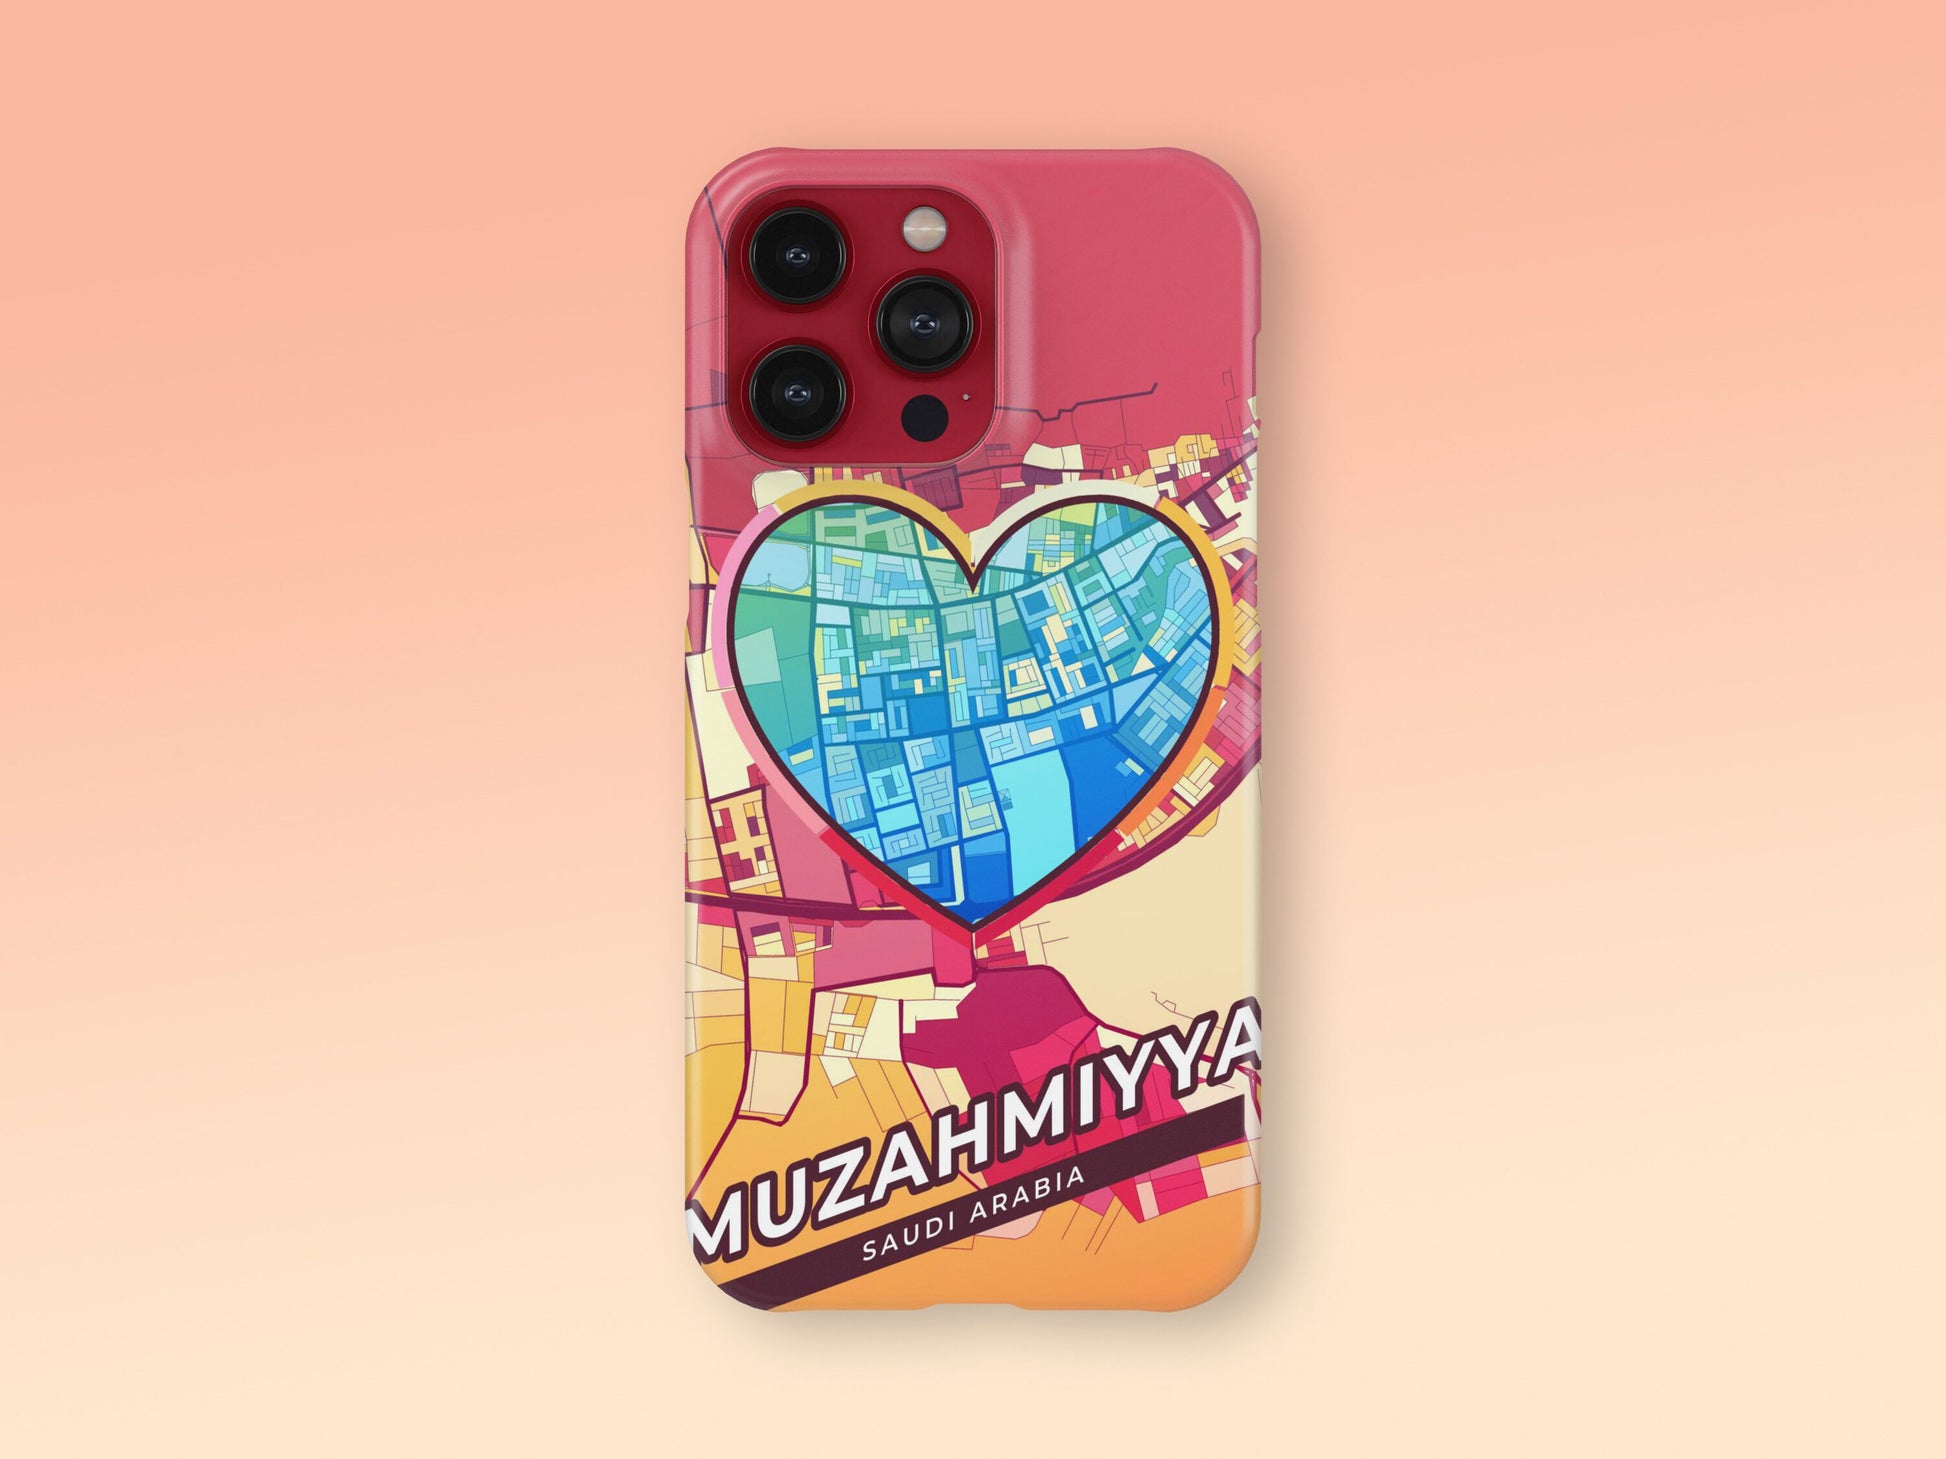 Muzahmiyya Saudi Arabia slim phone case with colorful icon 2